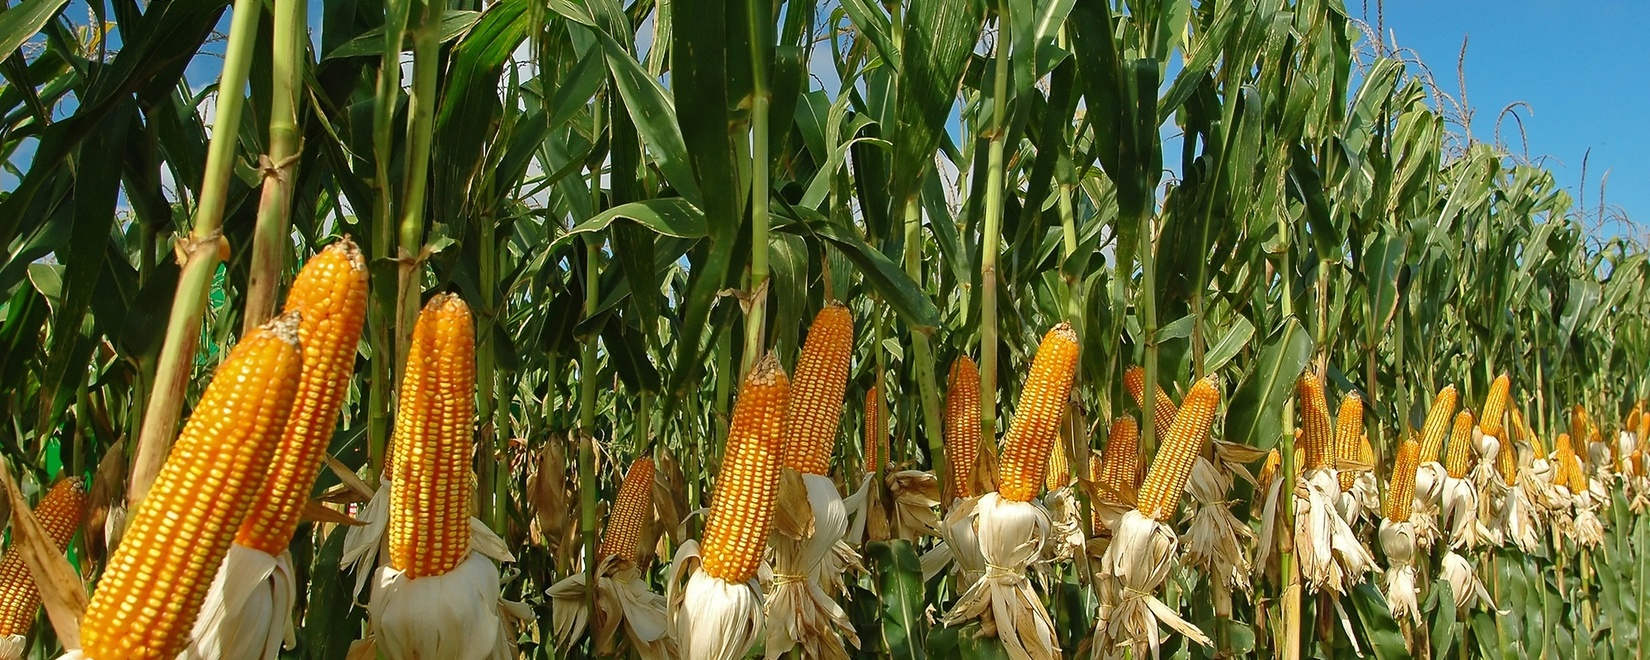 Фьючерсы на кукурузу и сою в США стабилизировались во вторник после резкого роста рынка в конце прошлой недели